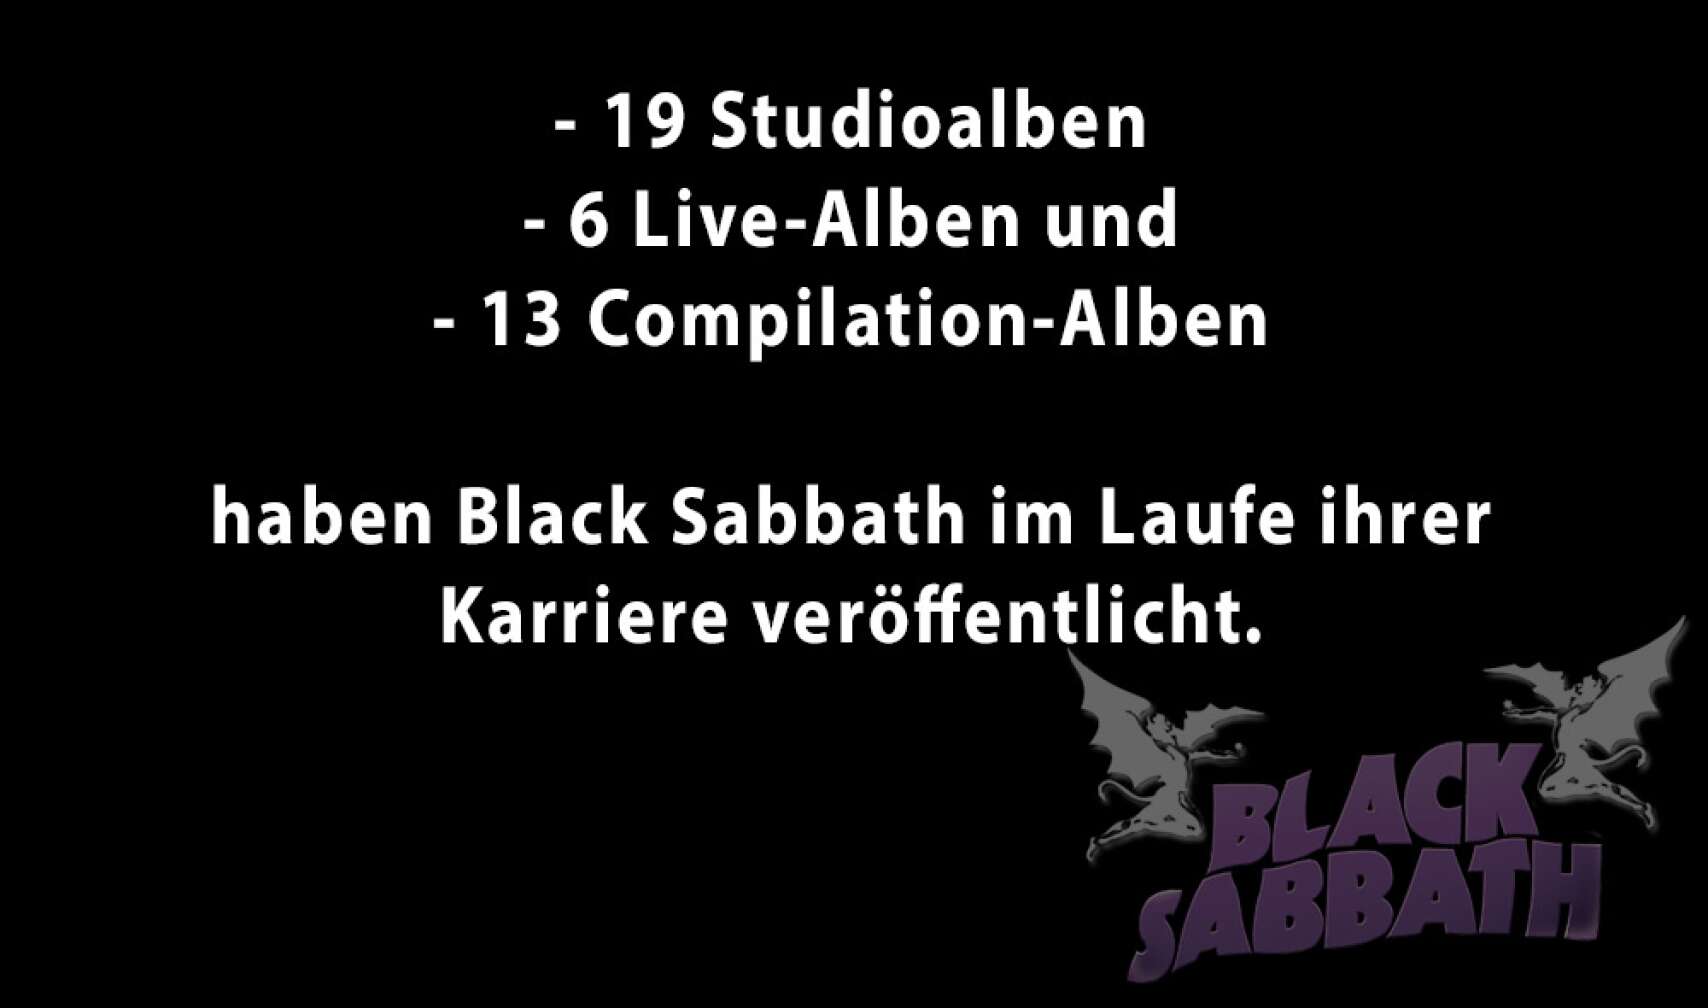 Black Sabbath in Zahlen